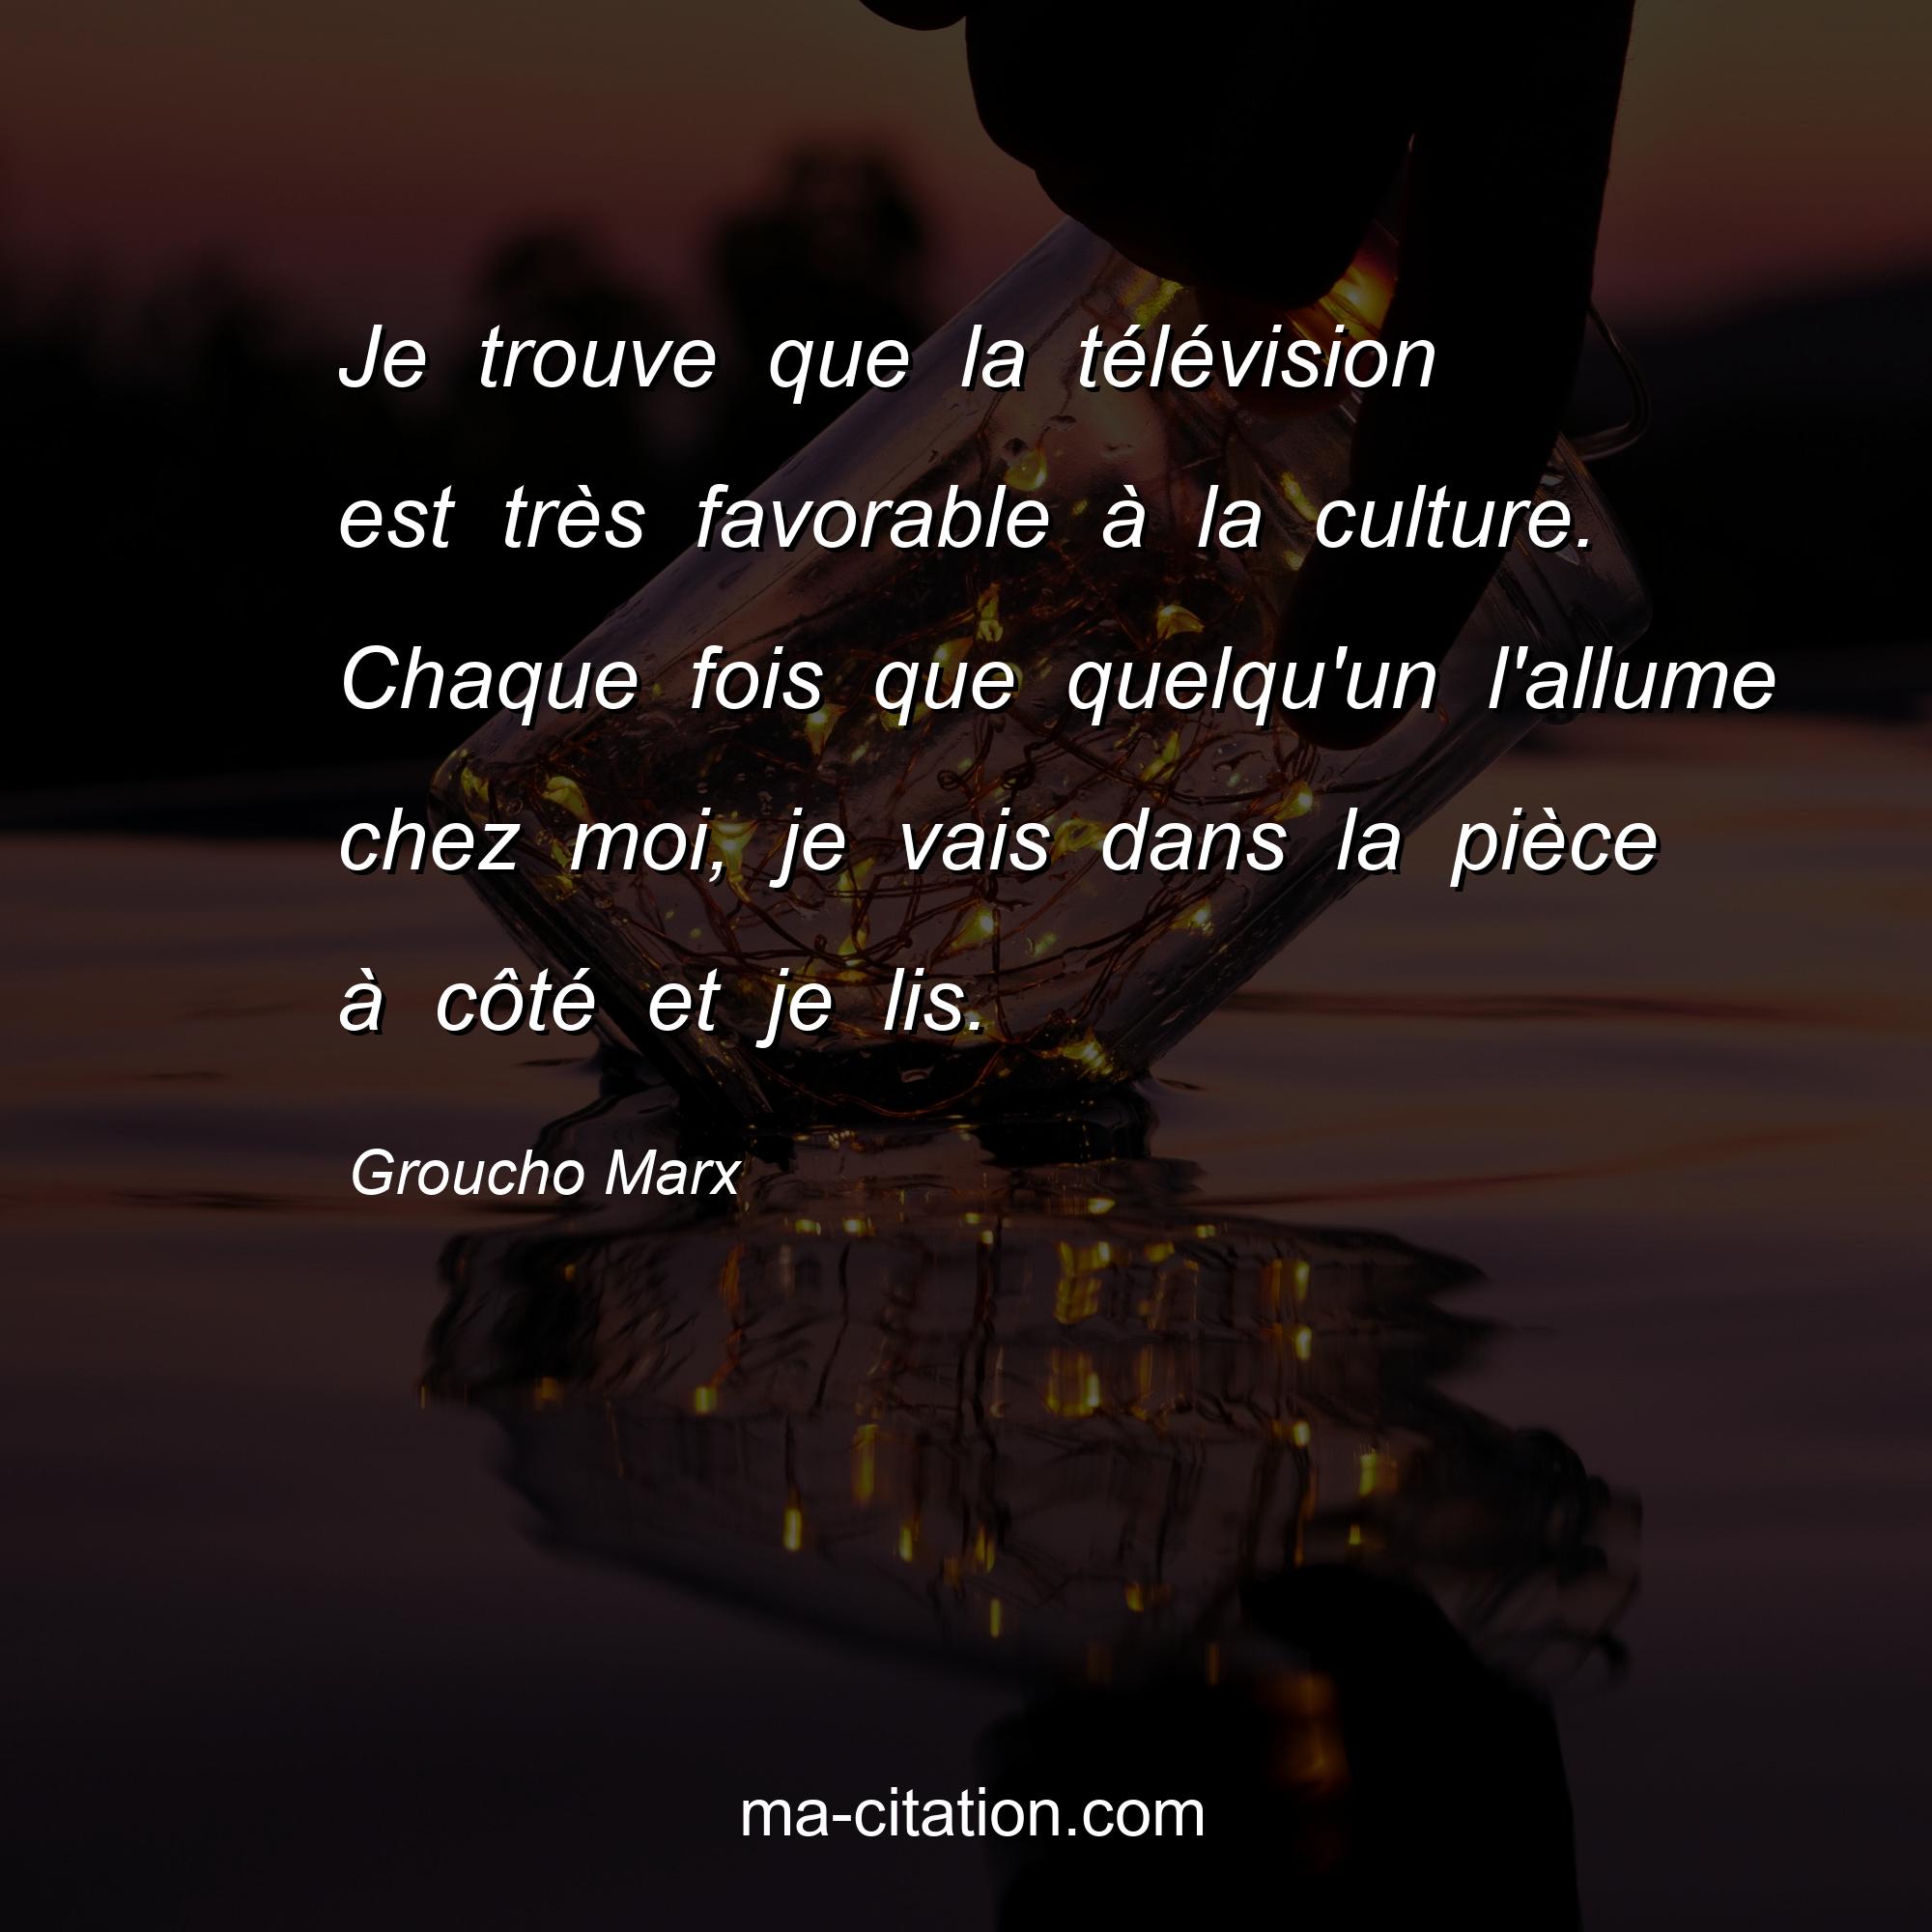 Groucho Marx : Je trouve que la télévision est très favorable à la culture. Chaque fois que quelqu'un l'allume chez moi, je vais dans la pièce à côté et je lis.